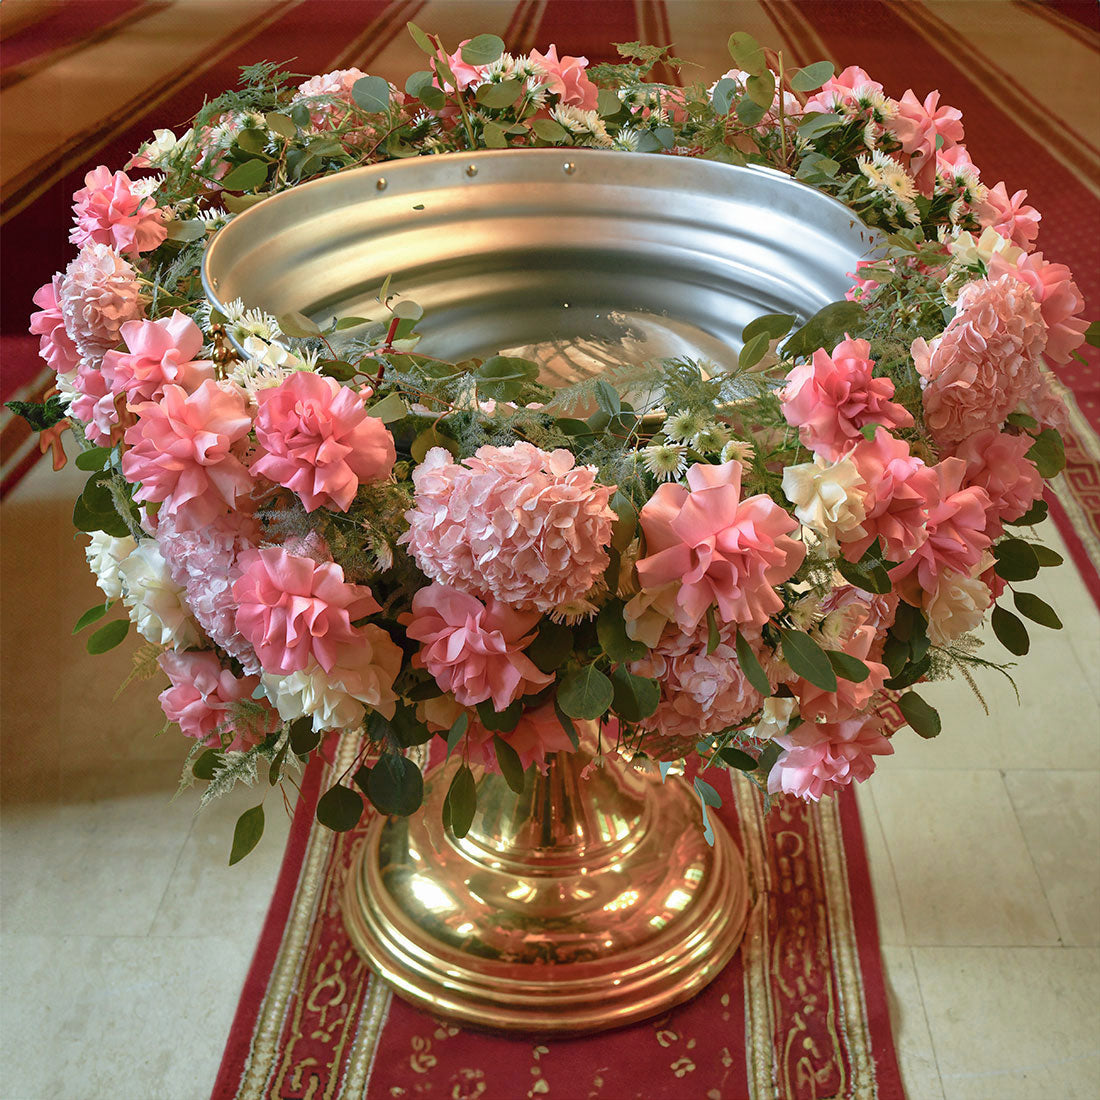 Aranjament cristelnita cu hortensie si trandafiri speciali albi si roz, 1